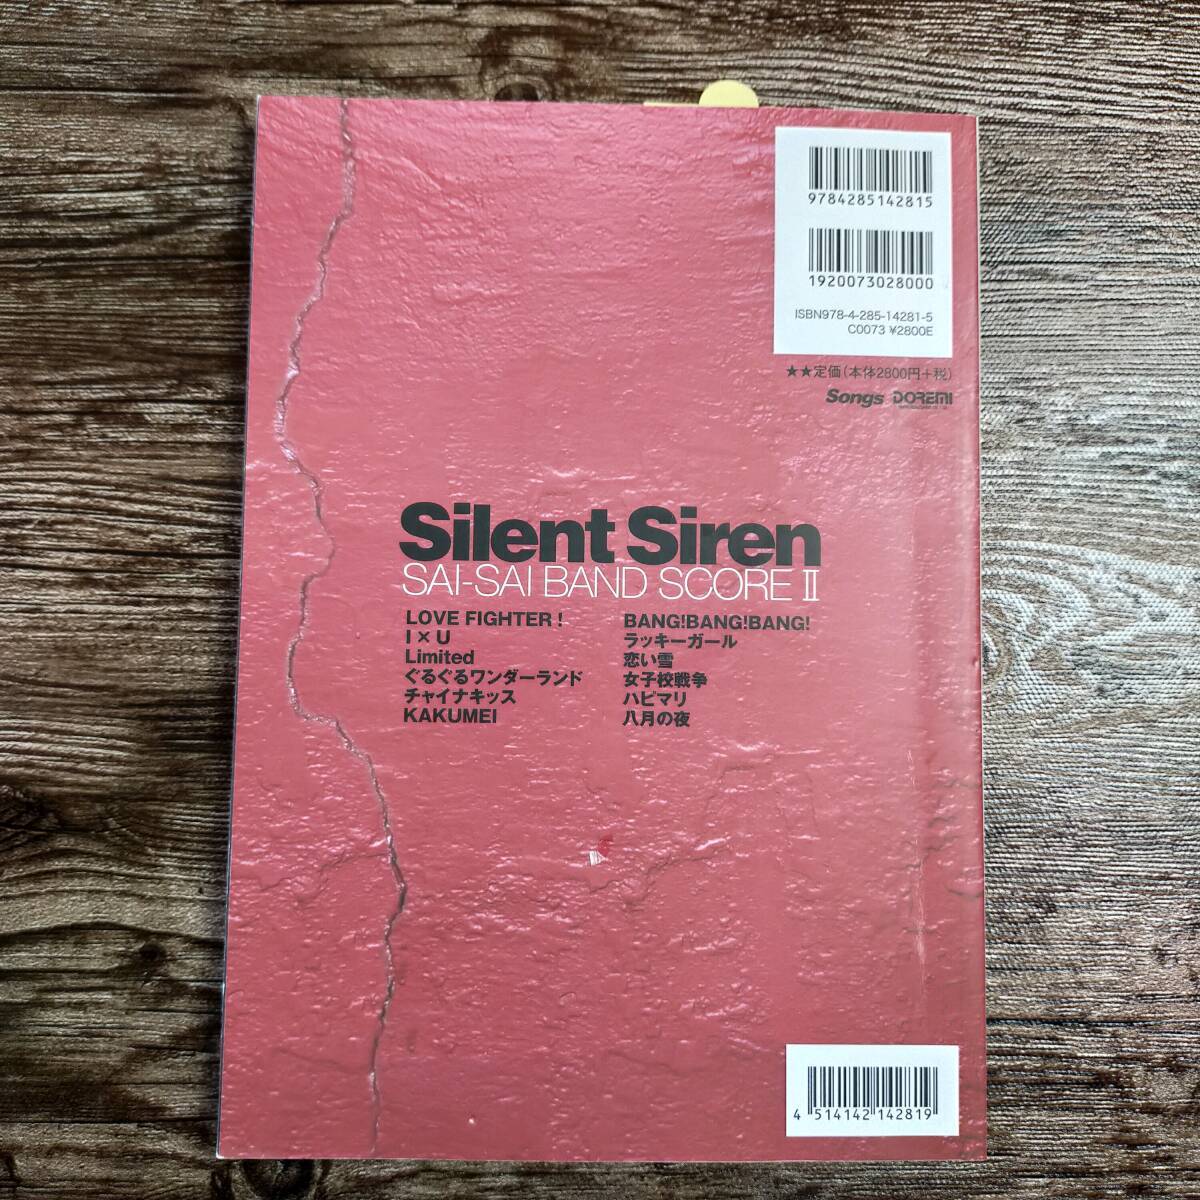 【送料無料/即決】 Silent Siren サイサイ バンドスコア Ⅱ バンドスコア 楽譜 スコア (M5160-1149)